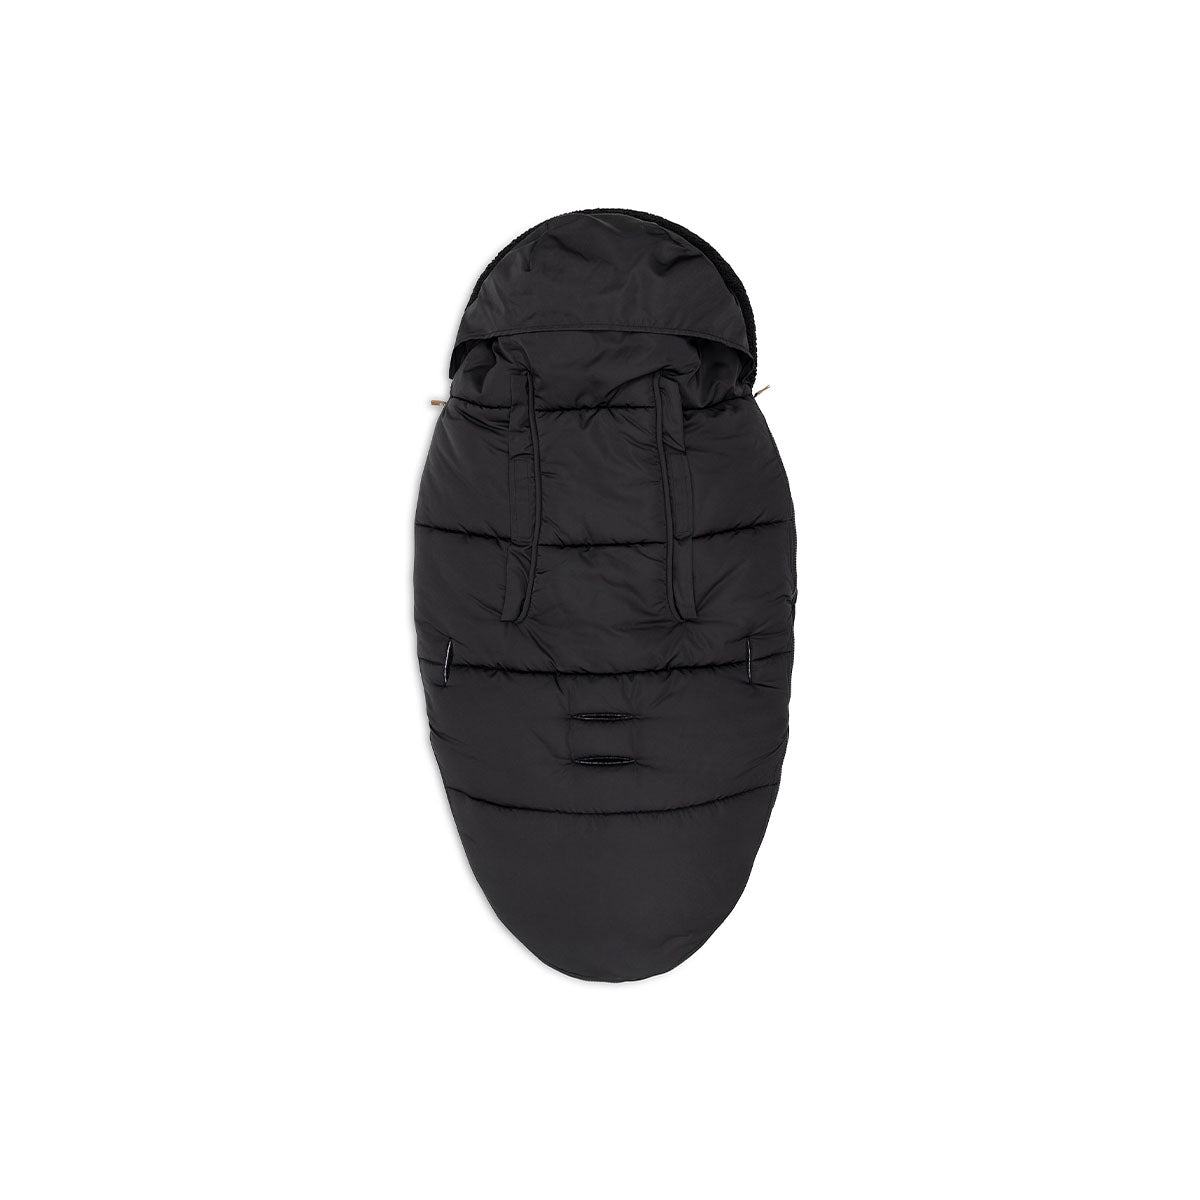 Stijlvol en warm: de voetenzak black van Jollein voor de buggy of kinderwagen. Bescherm jouw mini tegen de wind en kou. Met waterafstotende laag. Verkrijgbaar in diverse kleuren. VanZus